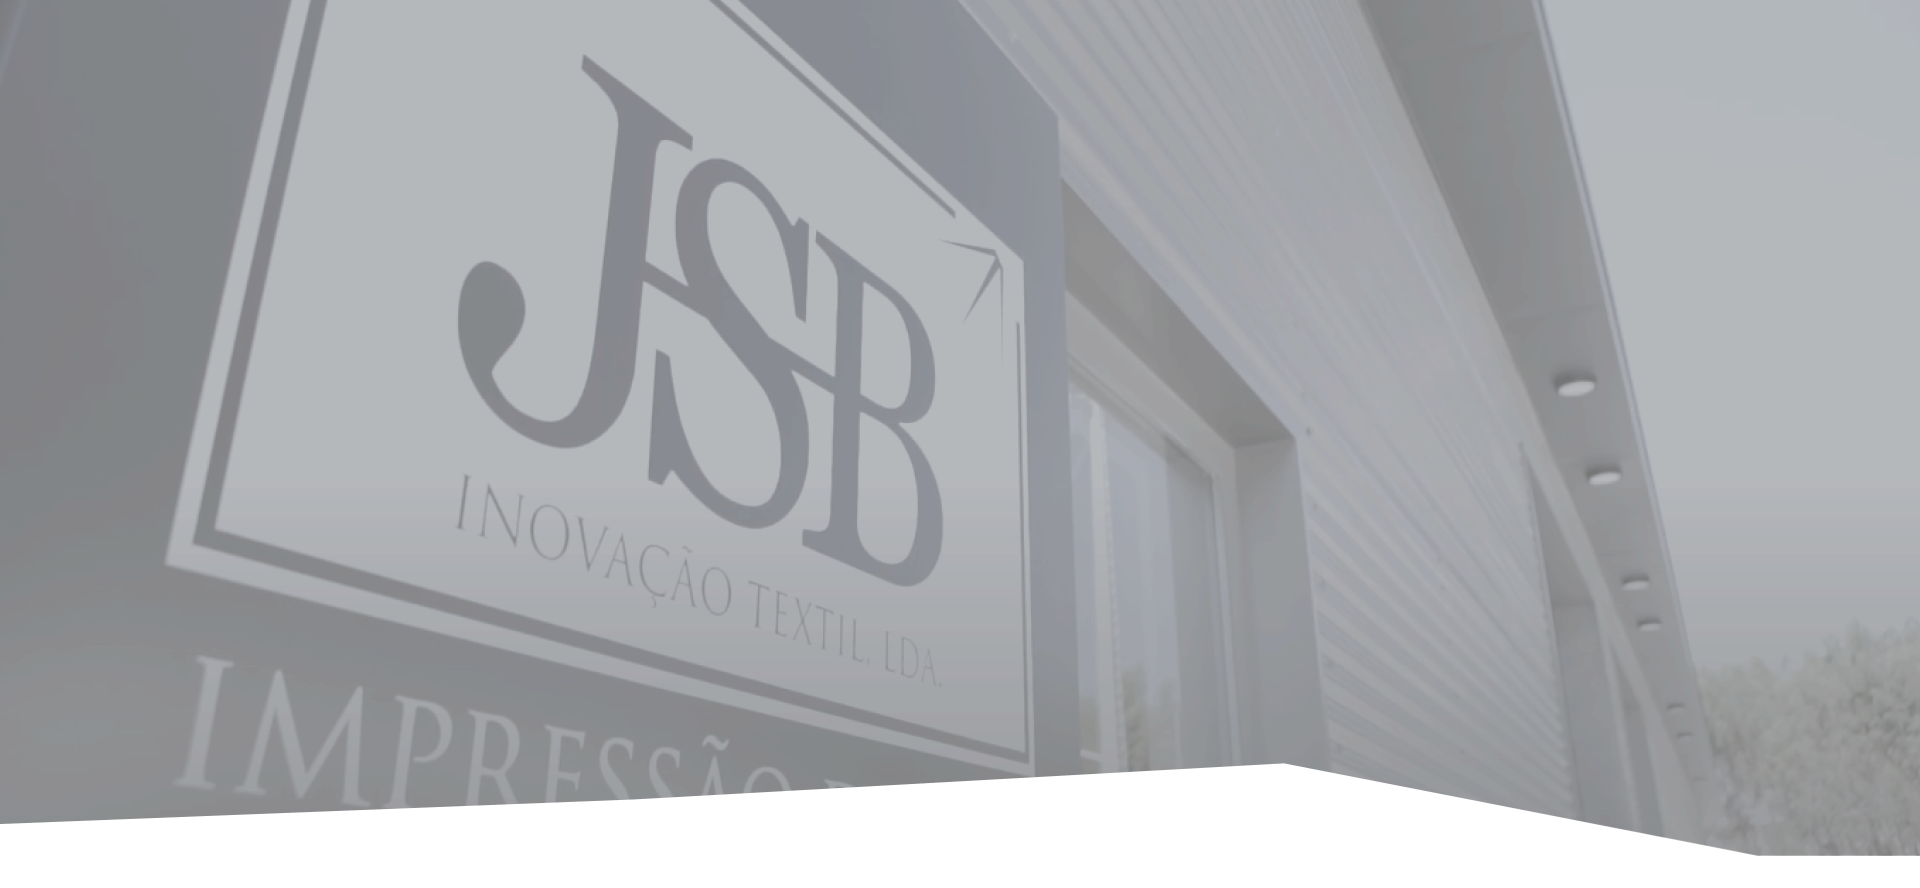 JSB Inovação Têxtil Lda